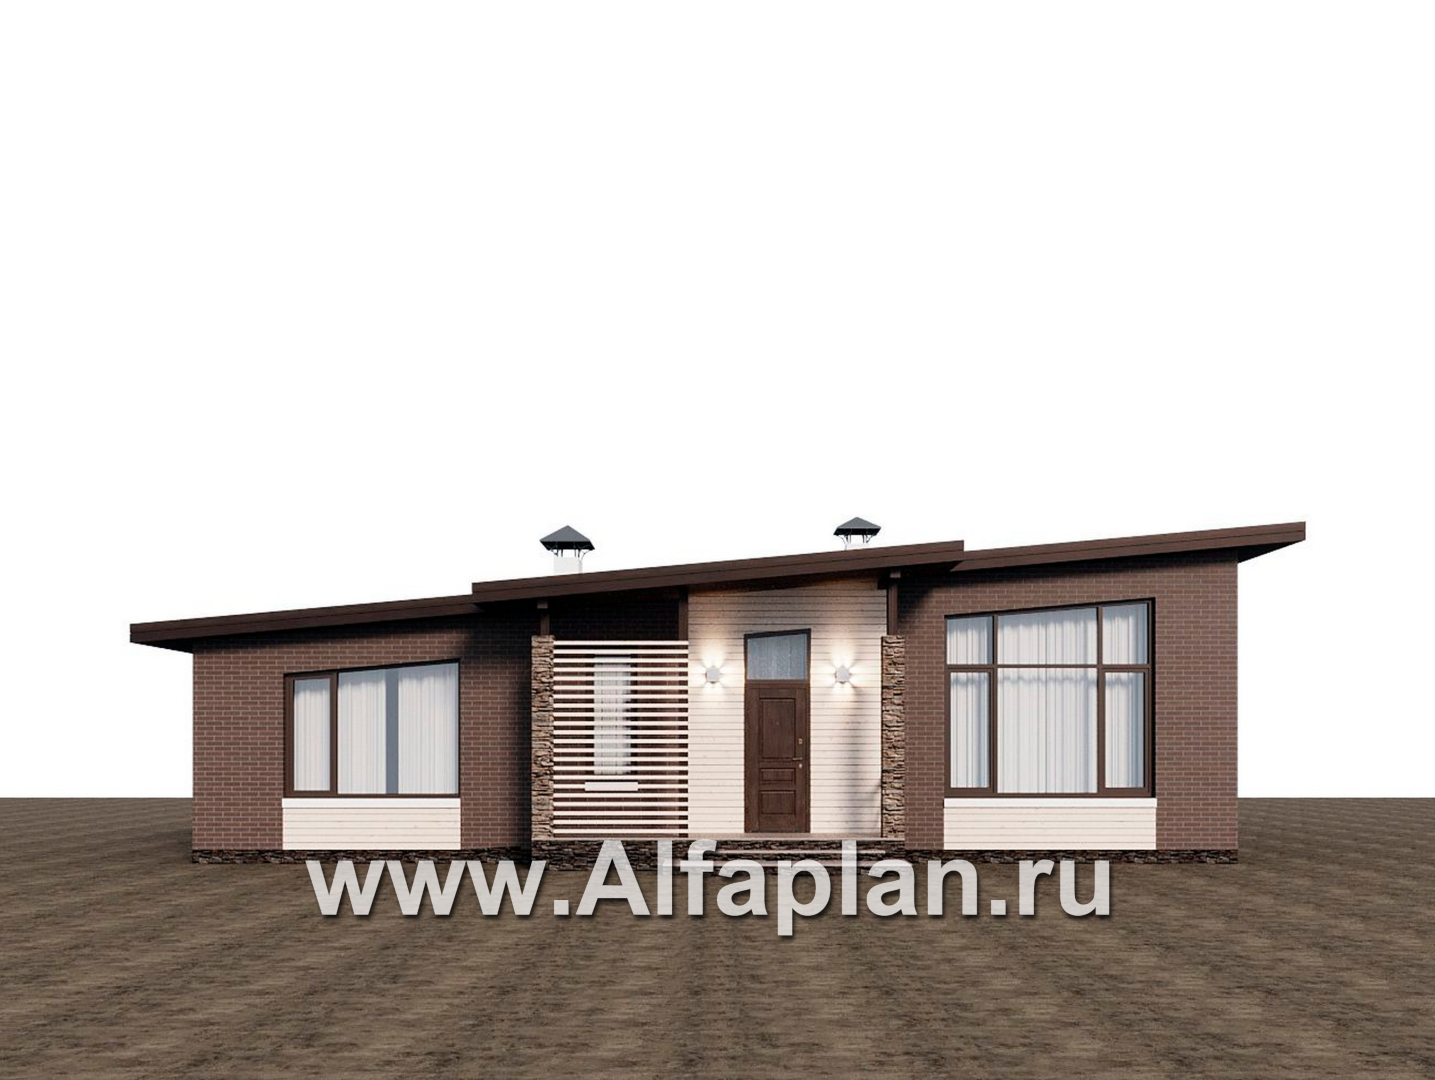 Проекты домов Альфаплан - "Стрелец" -проект газобетонного одноэтажного дома с односкатной крышей - дополнительное изображение №4